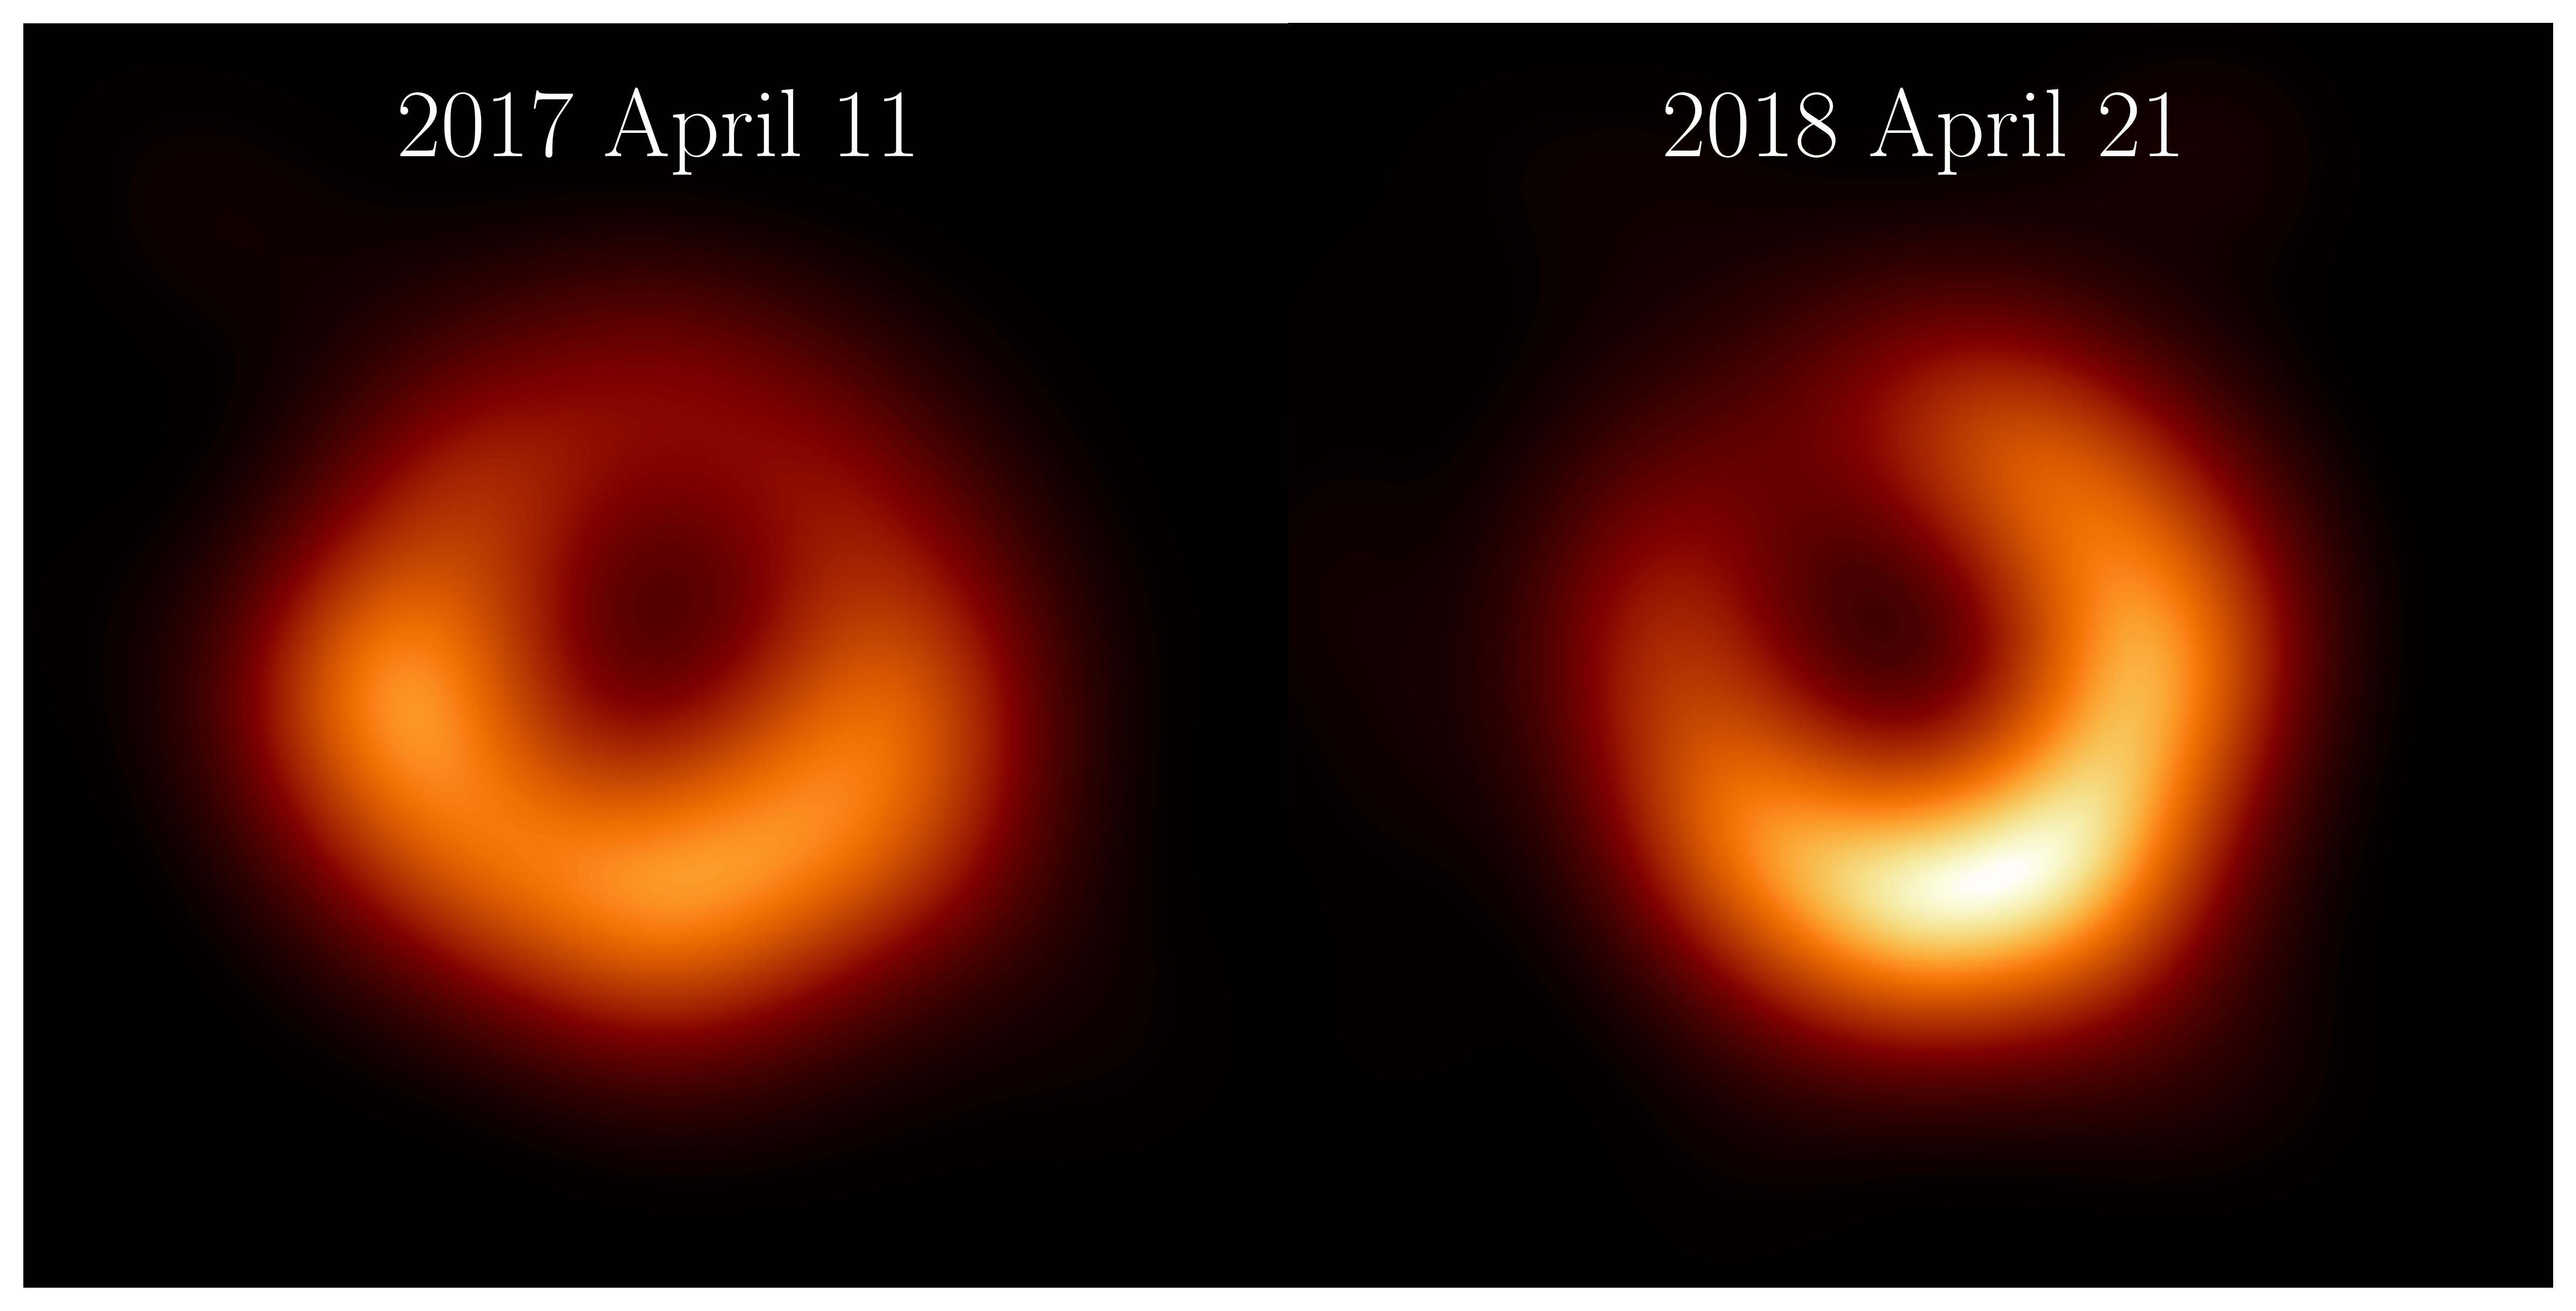 「事件視界望遠鏡」國際合作計畫公布2018年觀測到的M87黑洞新影像（右）， 顯示一個明亮發射光環，其大小與2017年觀測圖像（左）相同；此亮環圍繞著中央暗影，最亮處相對2017年已逆時鐘移動約30度，位於5點鐘位置。（圖片來源：事件視界望遠鏡計畫）